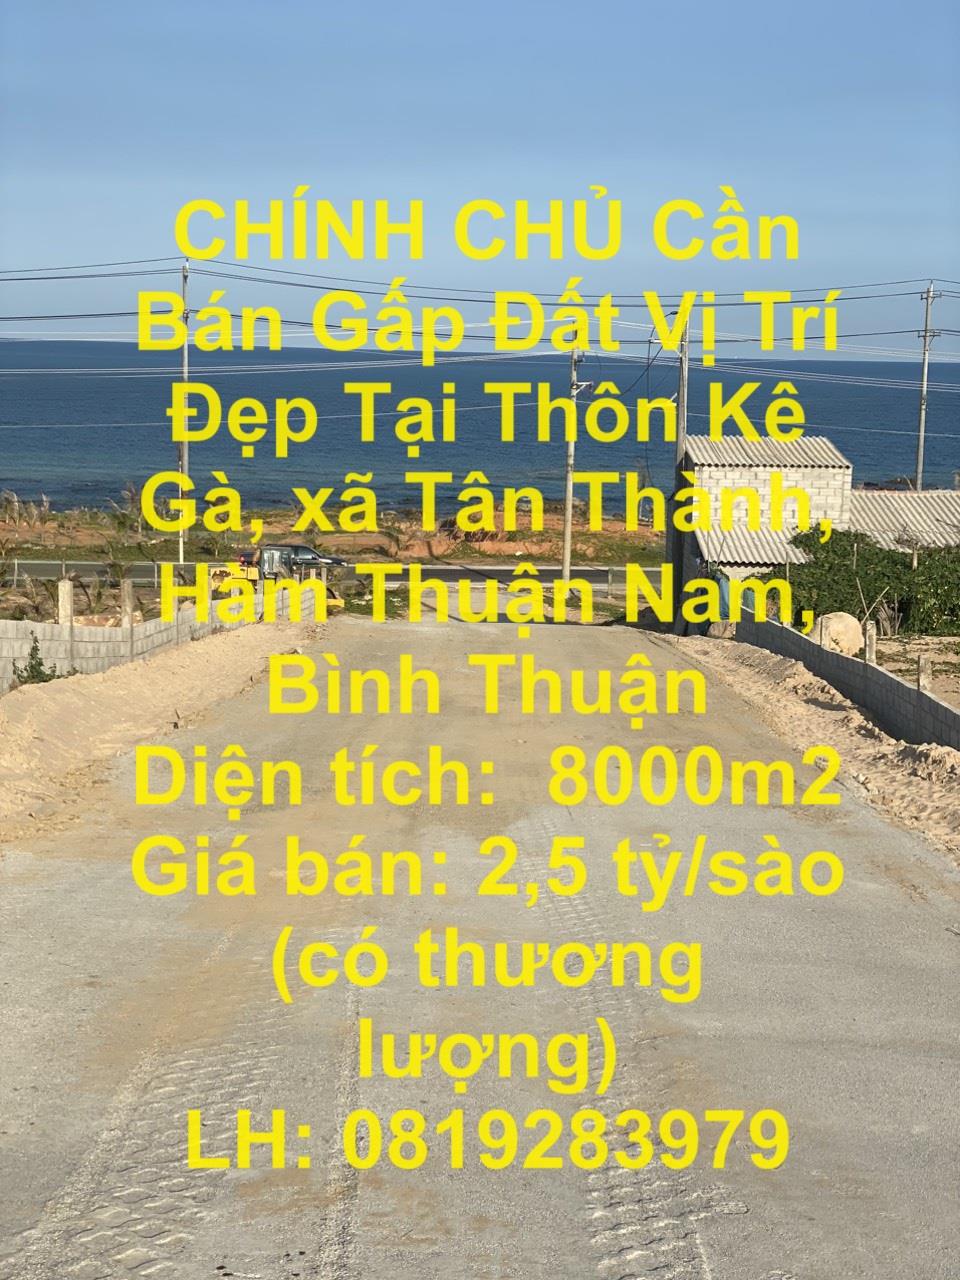 CHÍNH CHỦ Cần Bán Gấp Đất Vị Trí Đẹp Tại Thôn Kê Gà, xã Tân Thành, Hàm Thuận Nam, Bình Thuận1545200